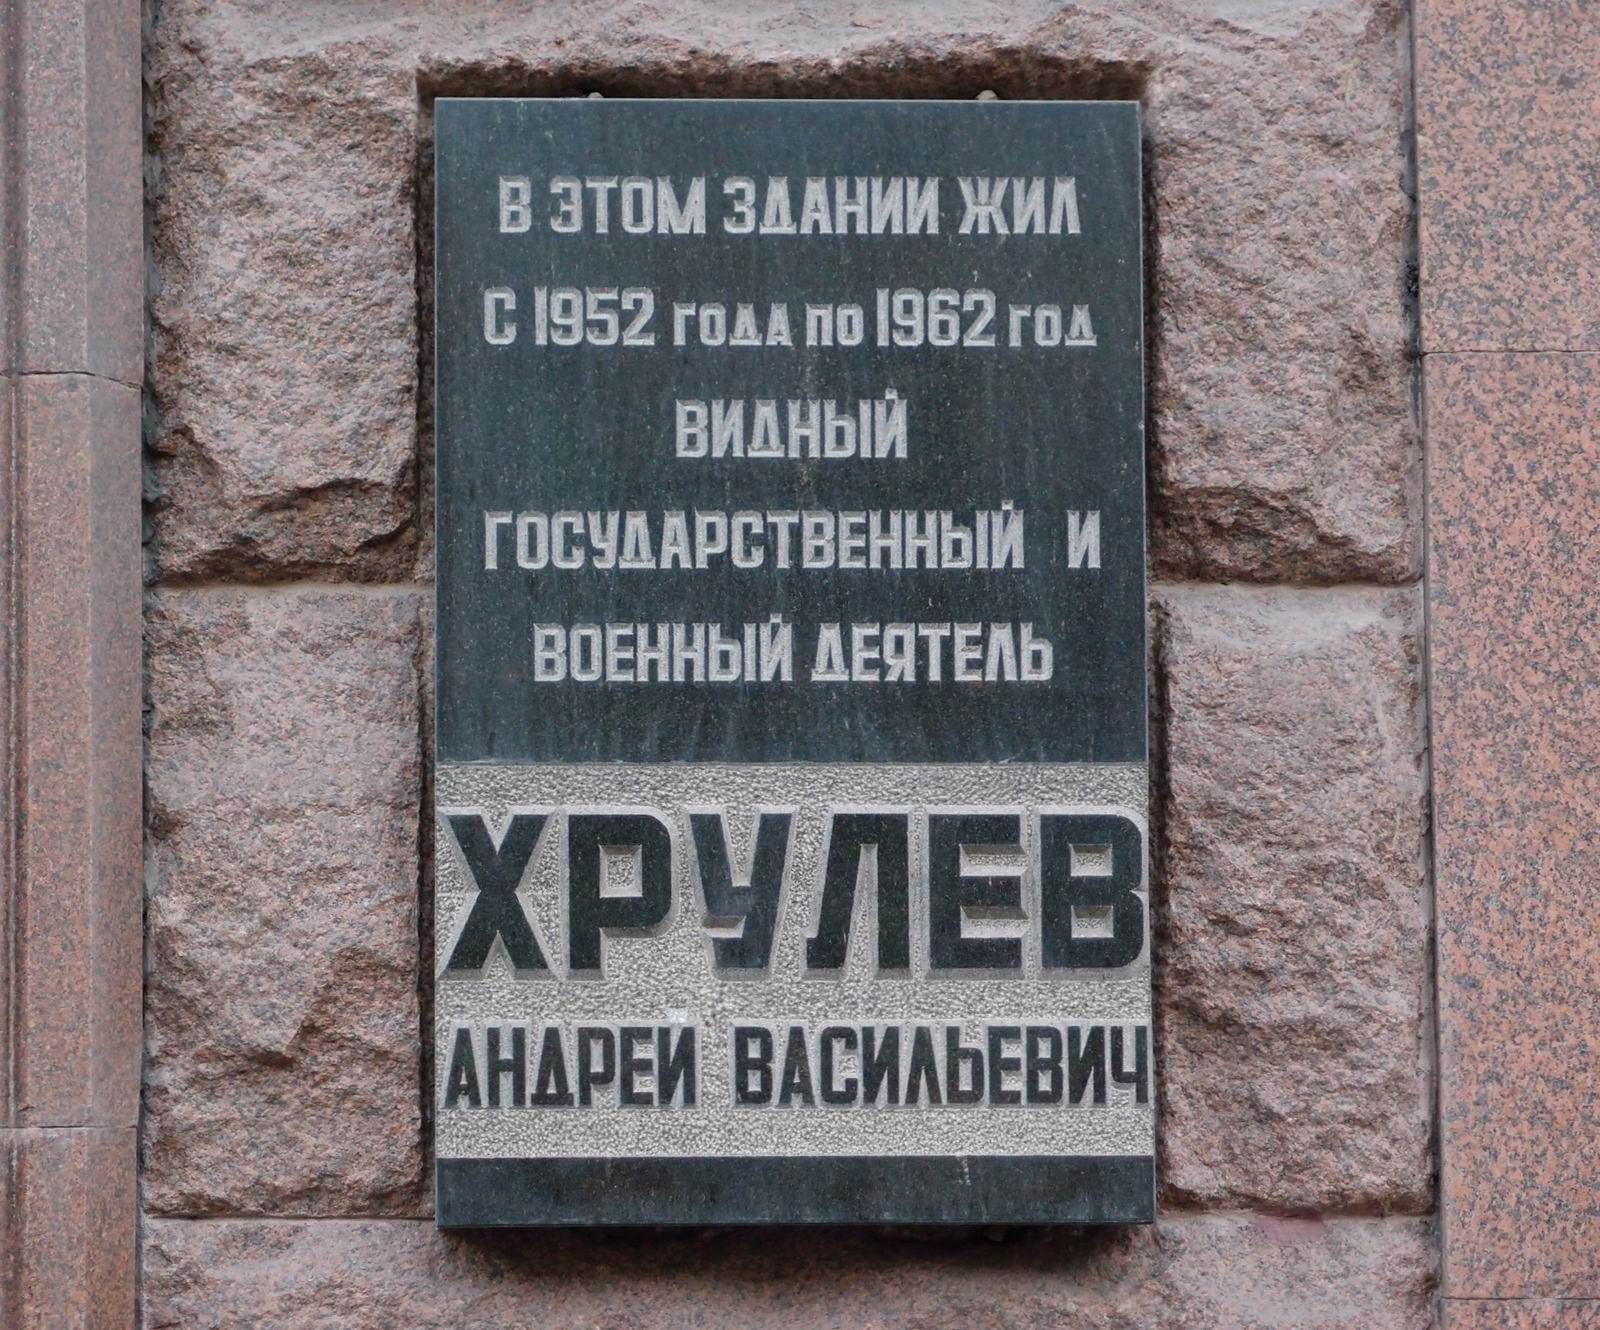 Мемориальная доска Хрулёву А.В. (1892-1962), арх. А.Б.Гурков, на Тверской улице, дом 9, открыта 7.5.1975.